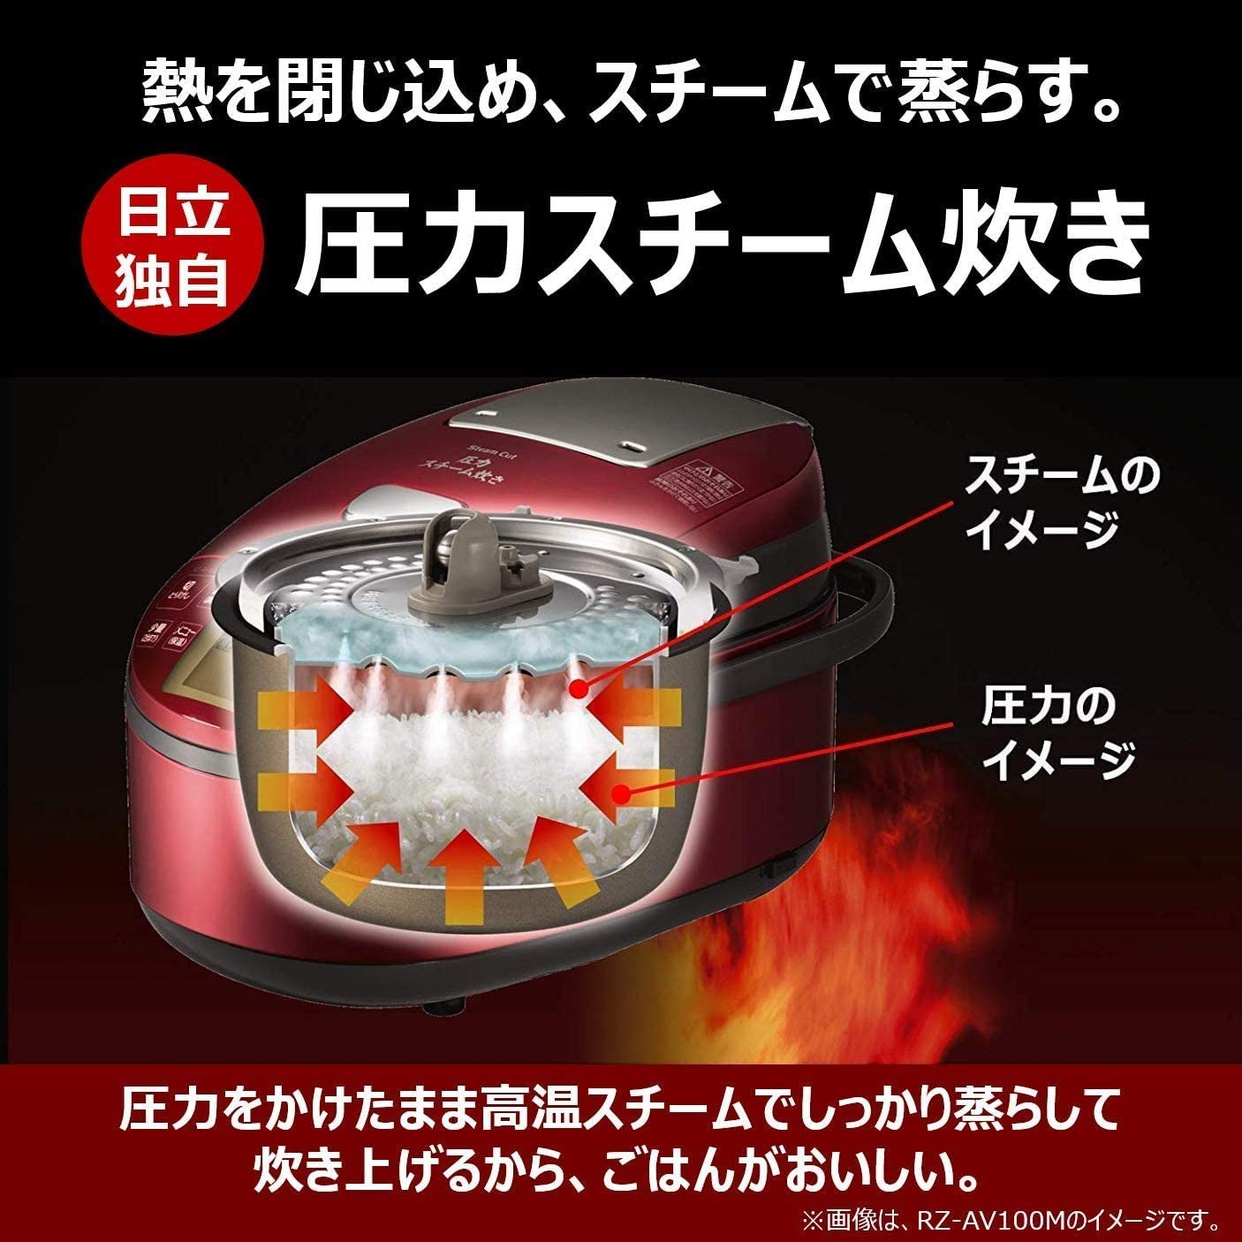 日立(HITACHI) 圧力スチーム炊き ふっくら御膳 RZ-AX10Mの商品画像3 